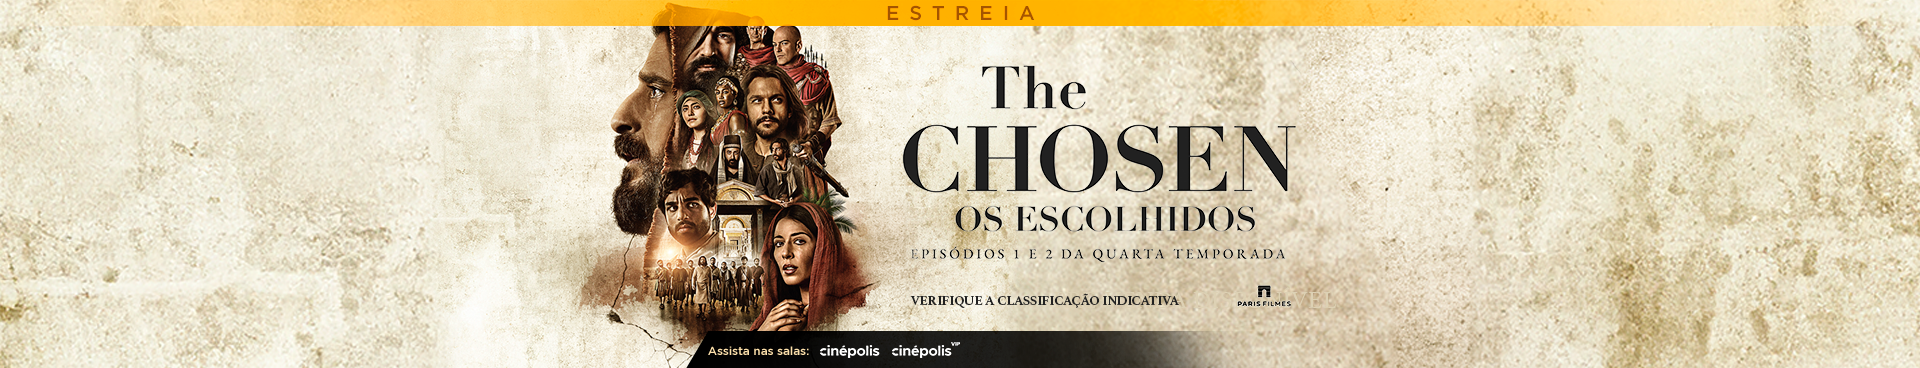 The Chosen: Os Escolhidos - Temporada 4 Ep. 5 e 6